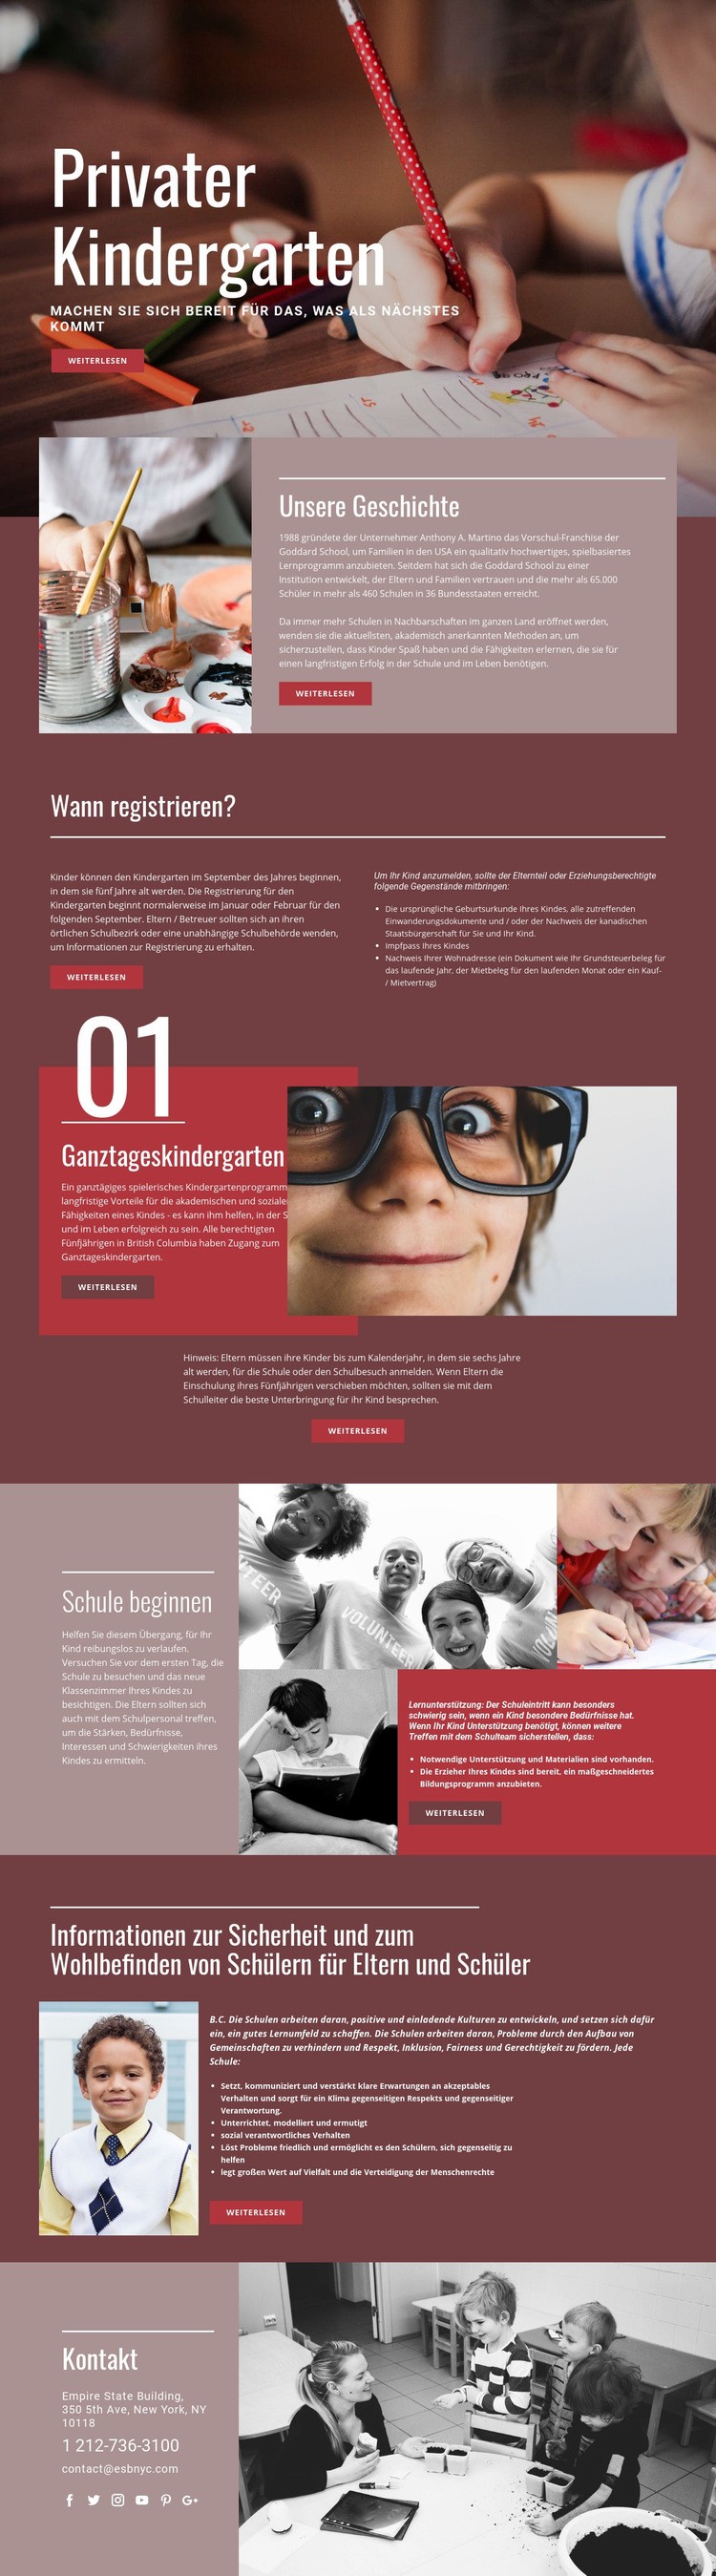 Private Grundschulbildung Website-Modell